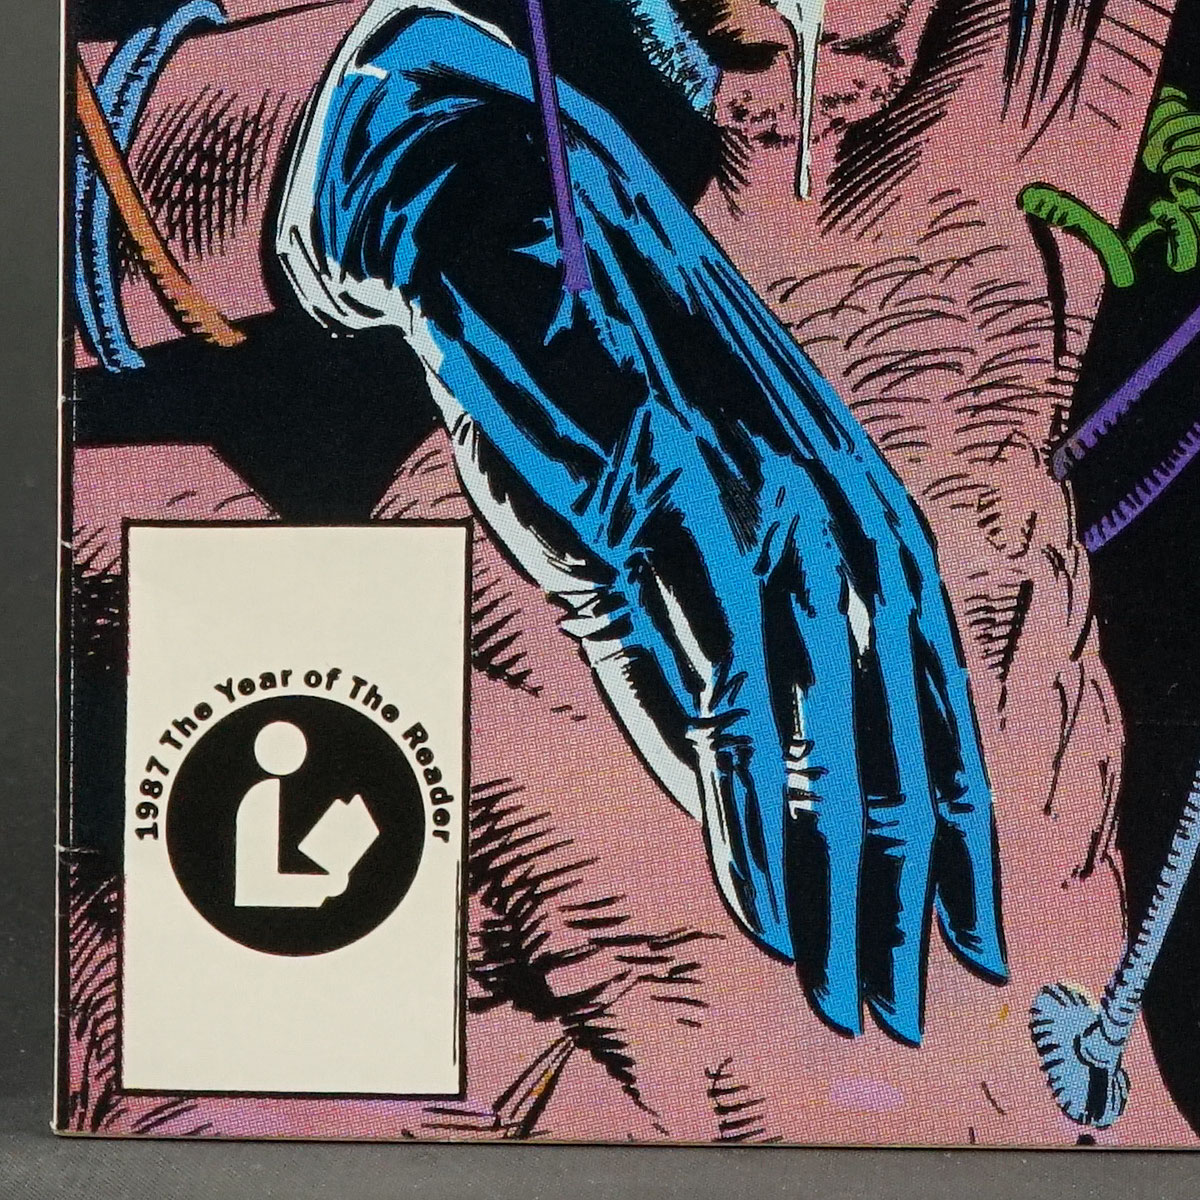 UNCANNY X-MEN #220 Marvel Comics 1987 (A/CA) Silvestri (W) Claremont 240407B